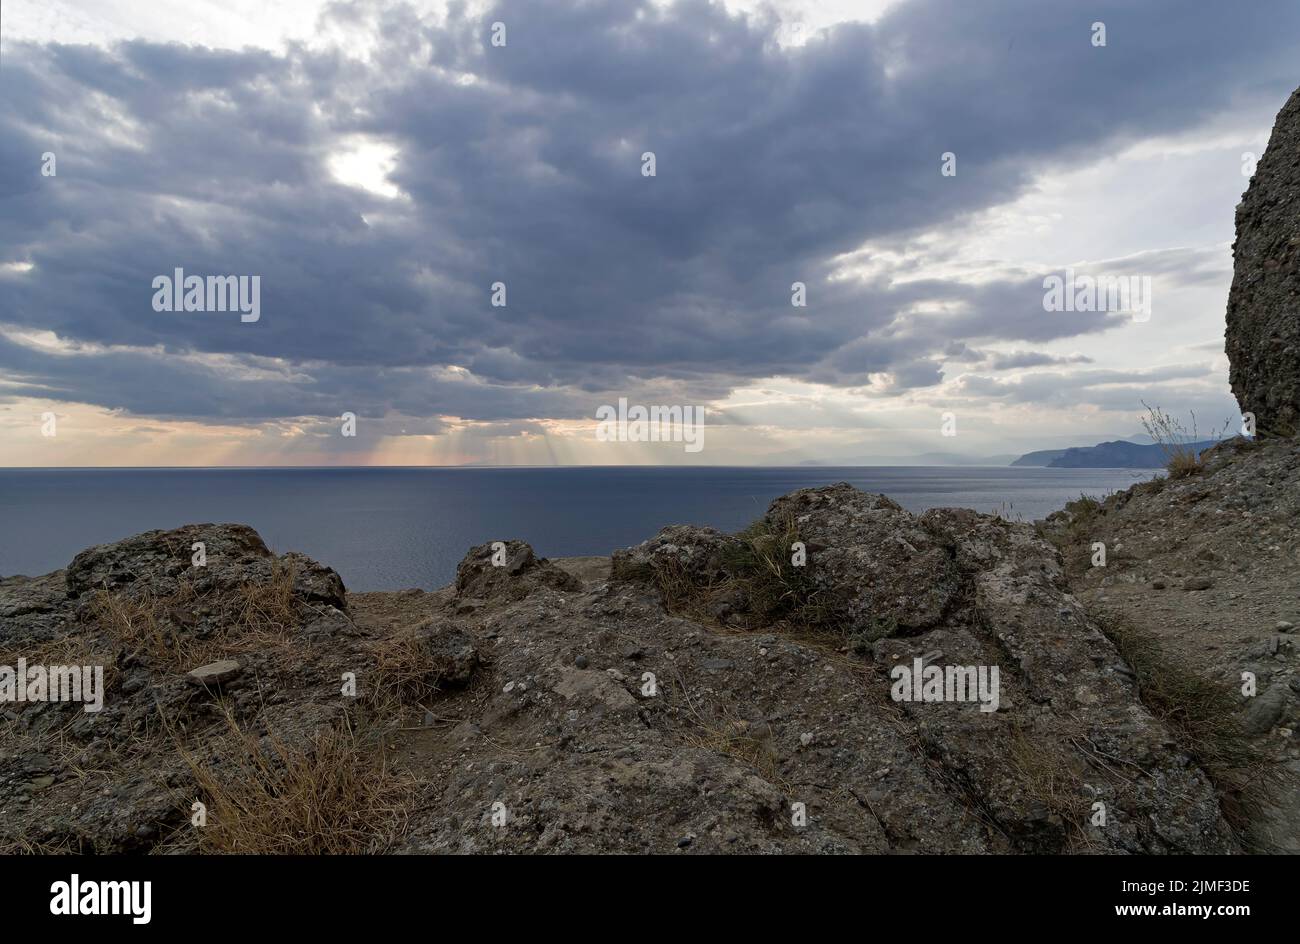 The rays of the sun over the sea. Crimea. Stock Photo